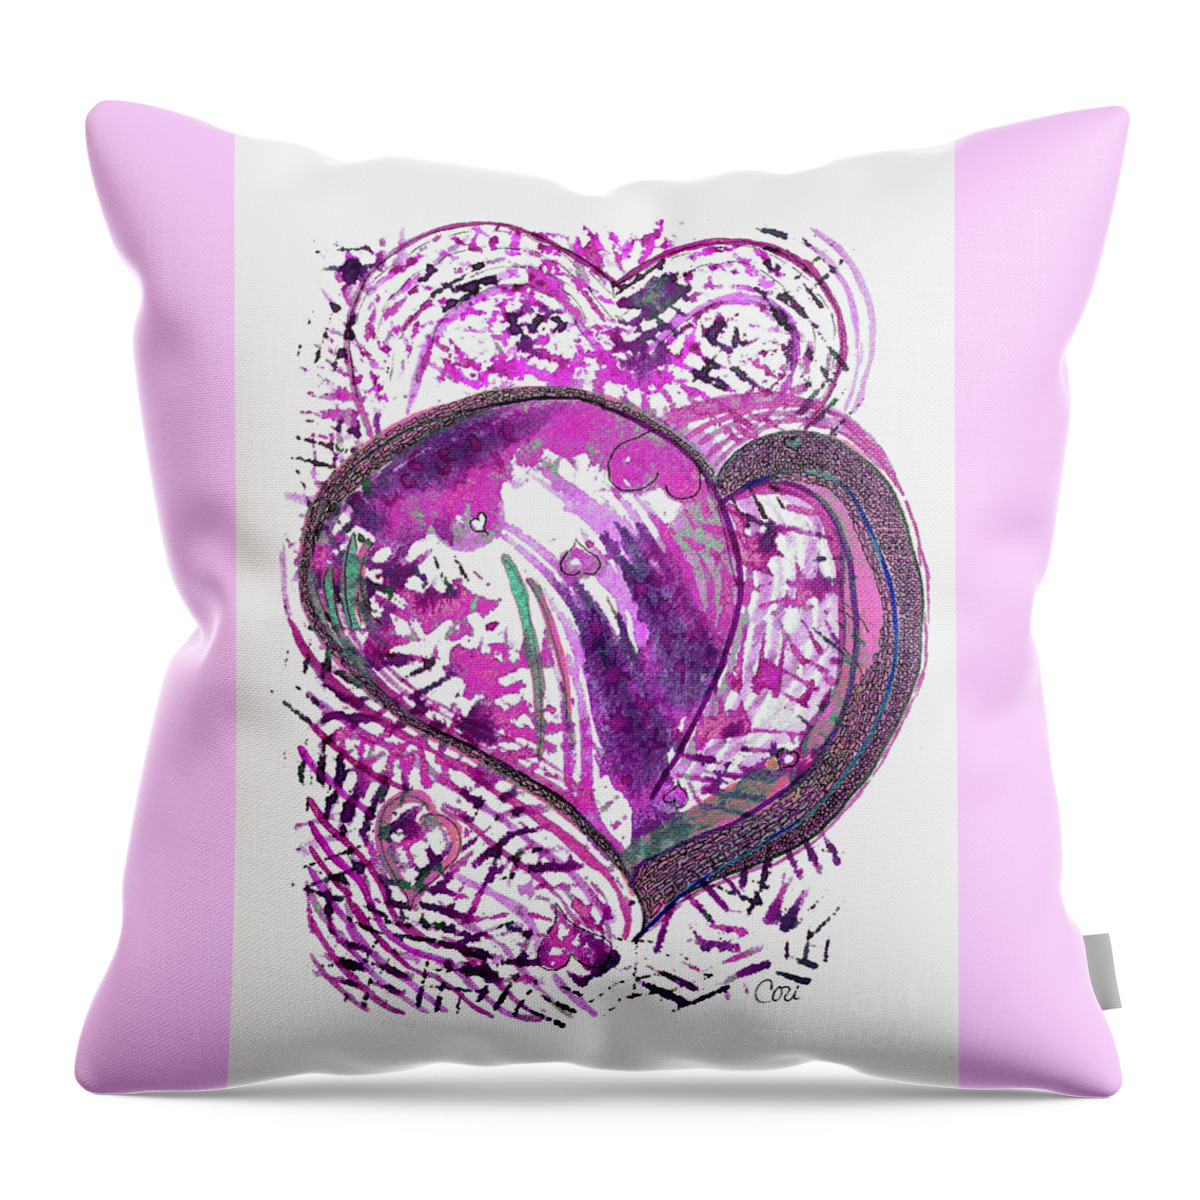 Pink Heart Throw Pillow featuring the digital art Pink Heart by Corinne Carroll